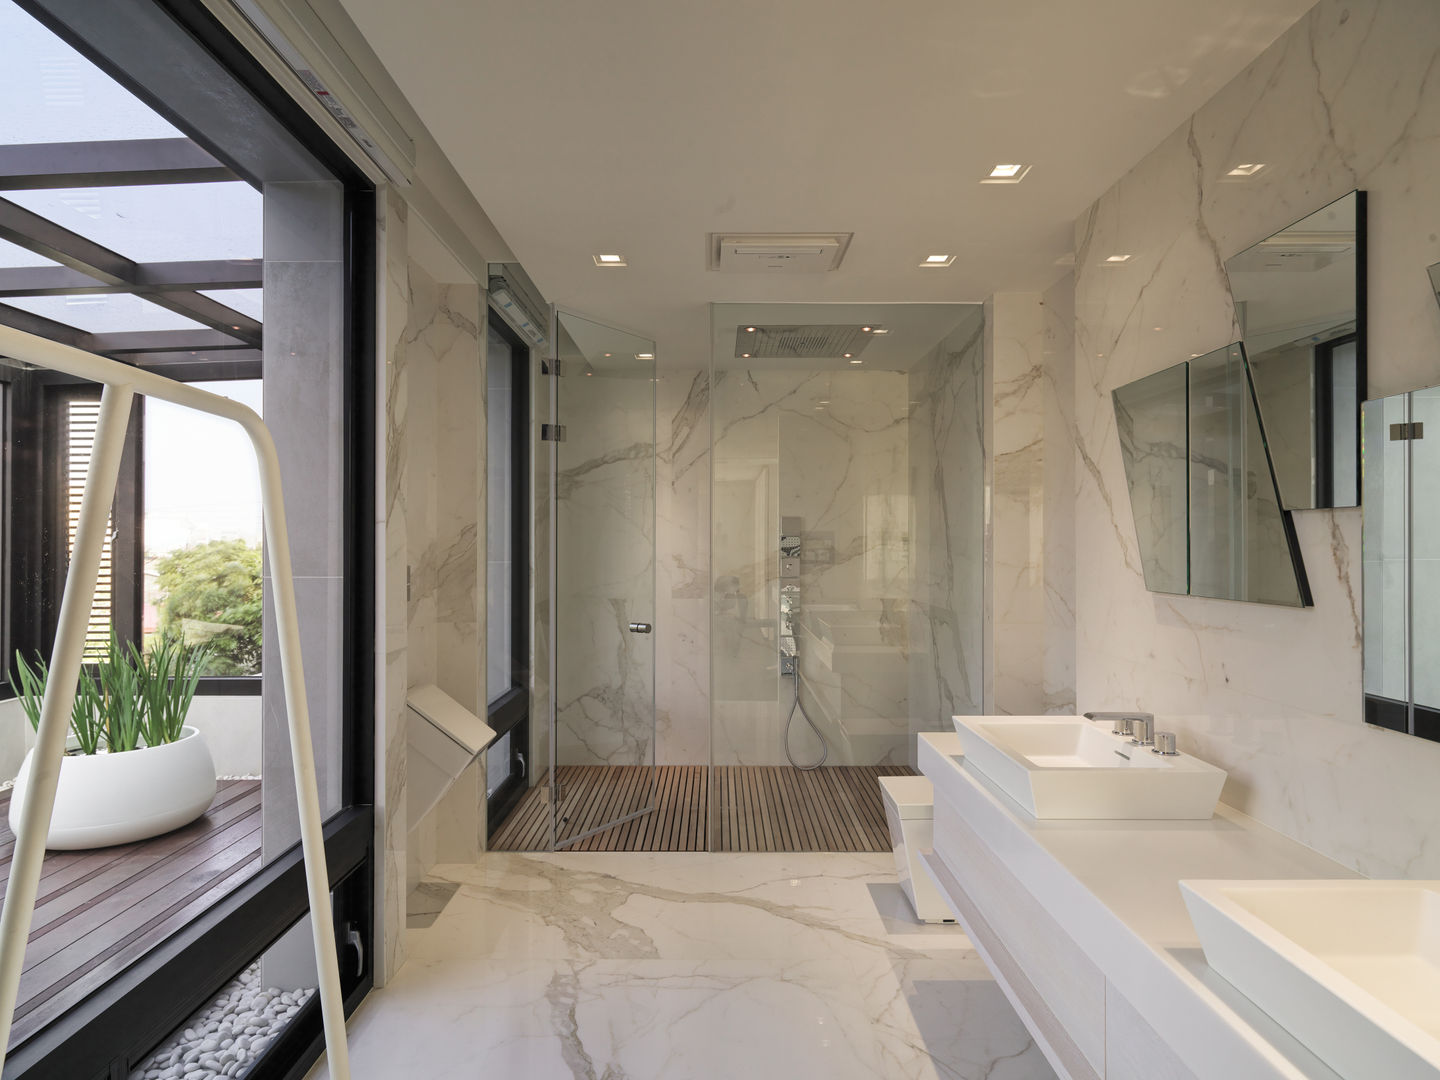 2015 TID 台灣室內設計大獎 /居住空間 /複層, HJF建築室內設計 Ho Jia-fu Interior Design Co., Ltd. HJF建築室內設計 Ho Jia-fu Interior Design Co., Ltd. ห้องน้ำ หินอ่อน